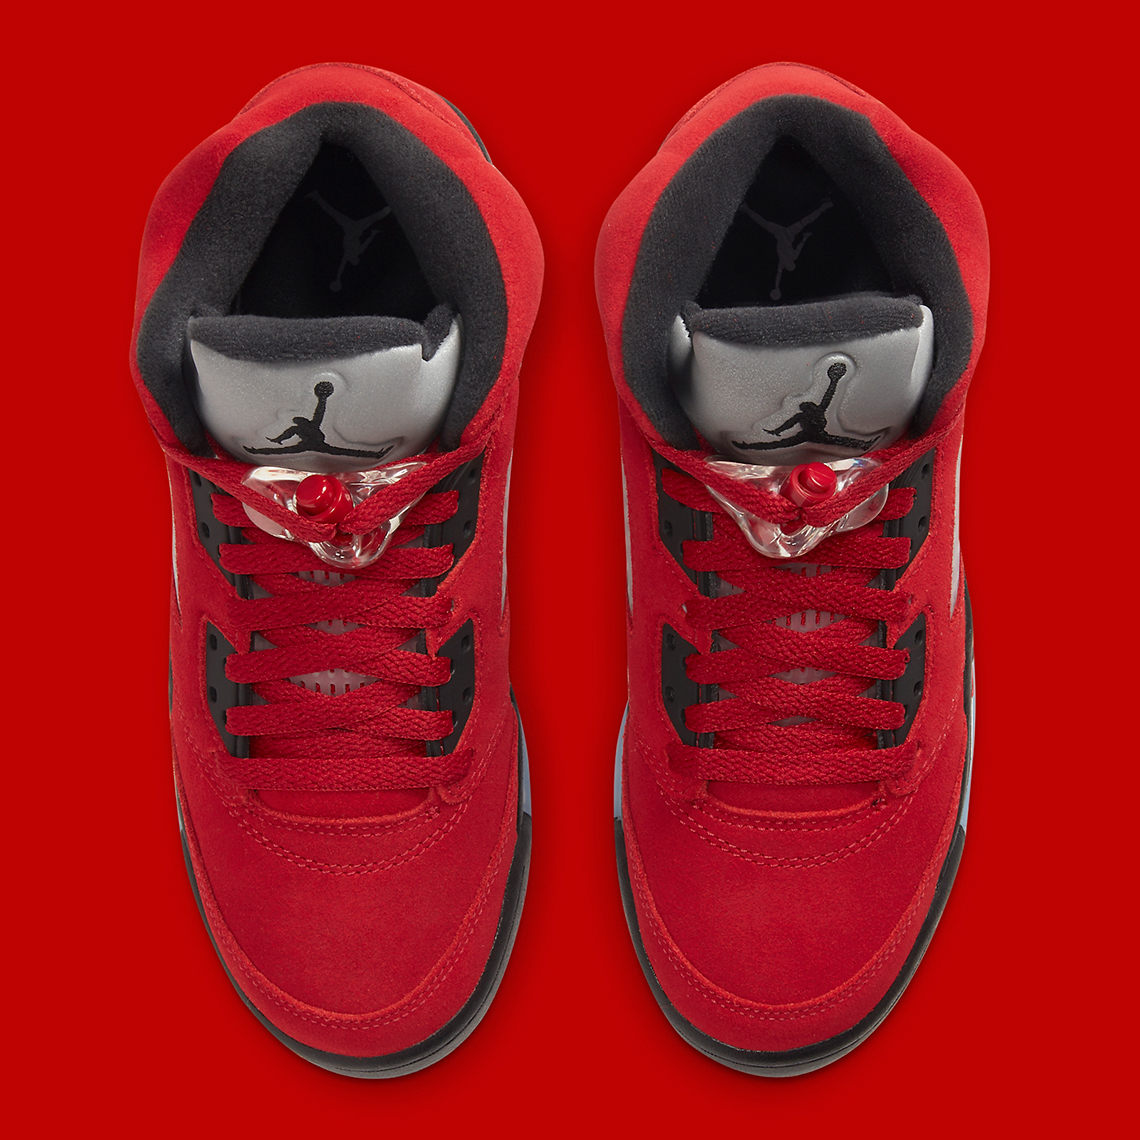 Air Jordan 5 Raging Bull 2021 Release Date | SneakerNews.com